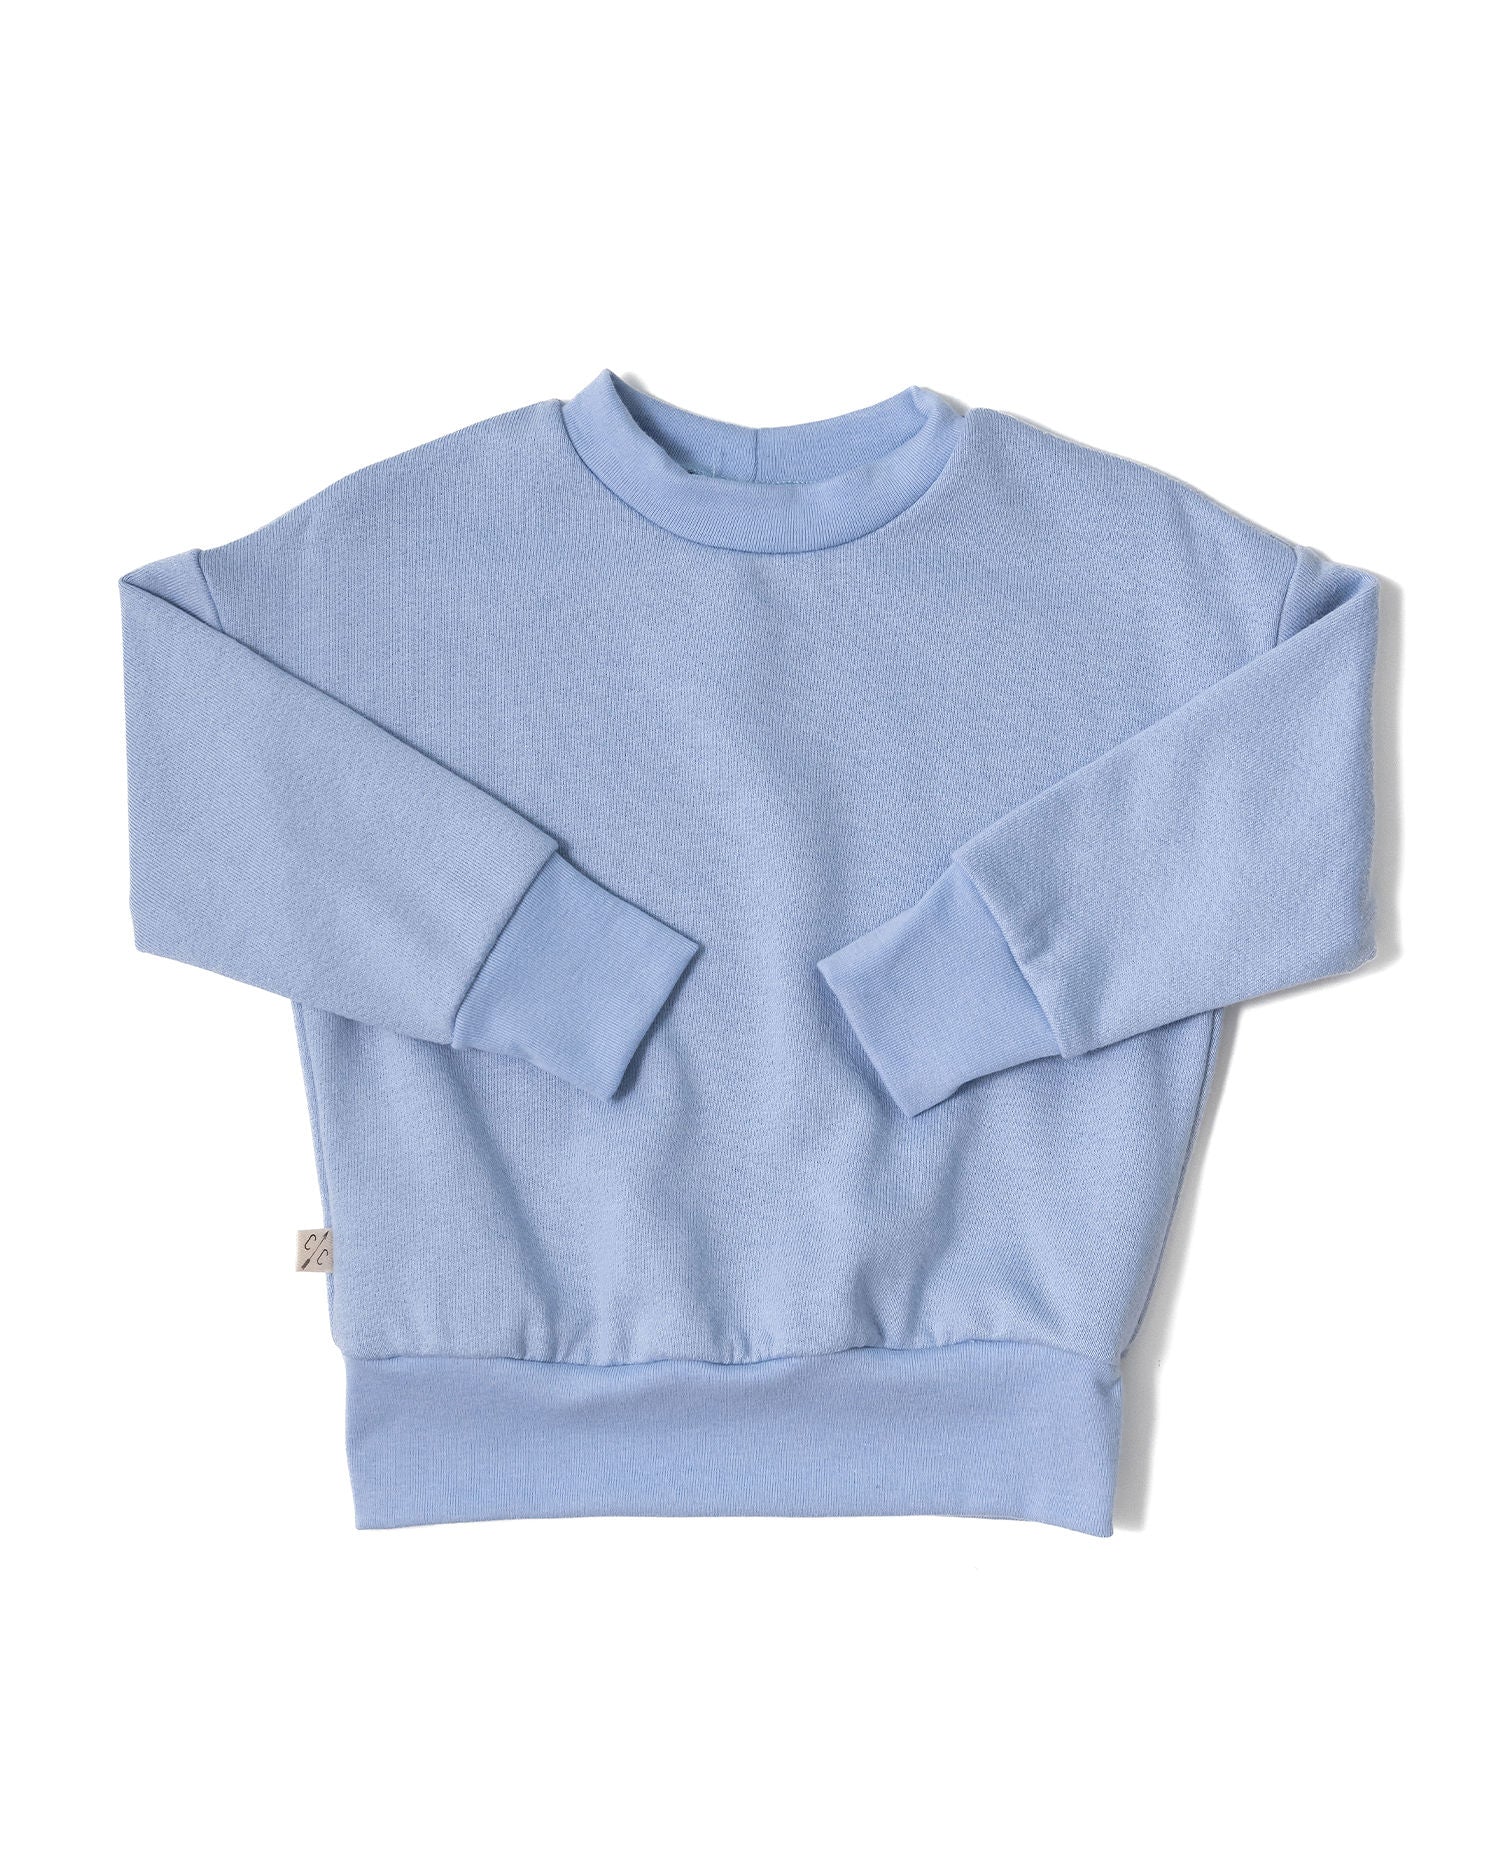 Periwinkle Sweatshirts & Hoodies for Sale